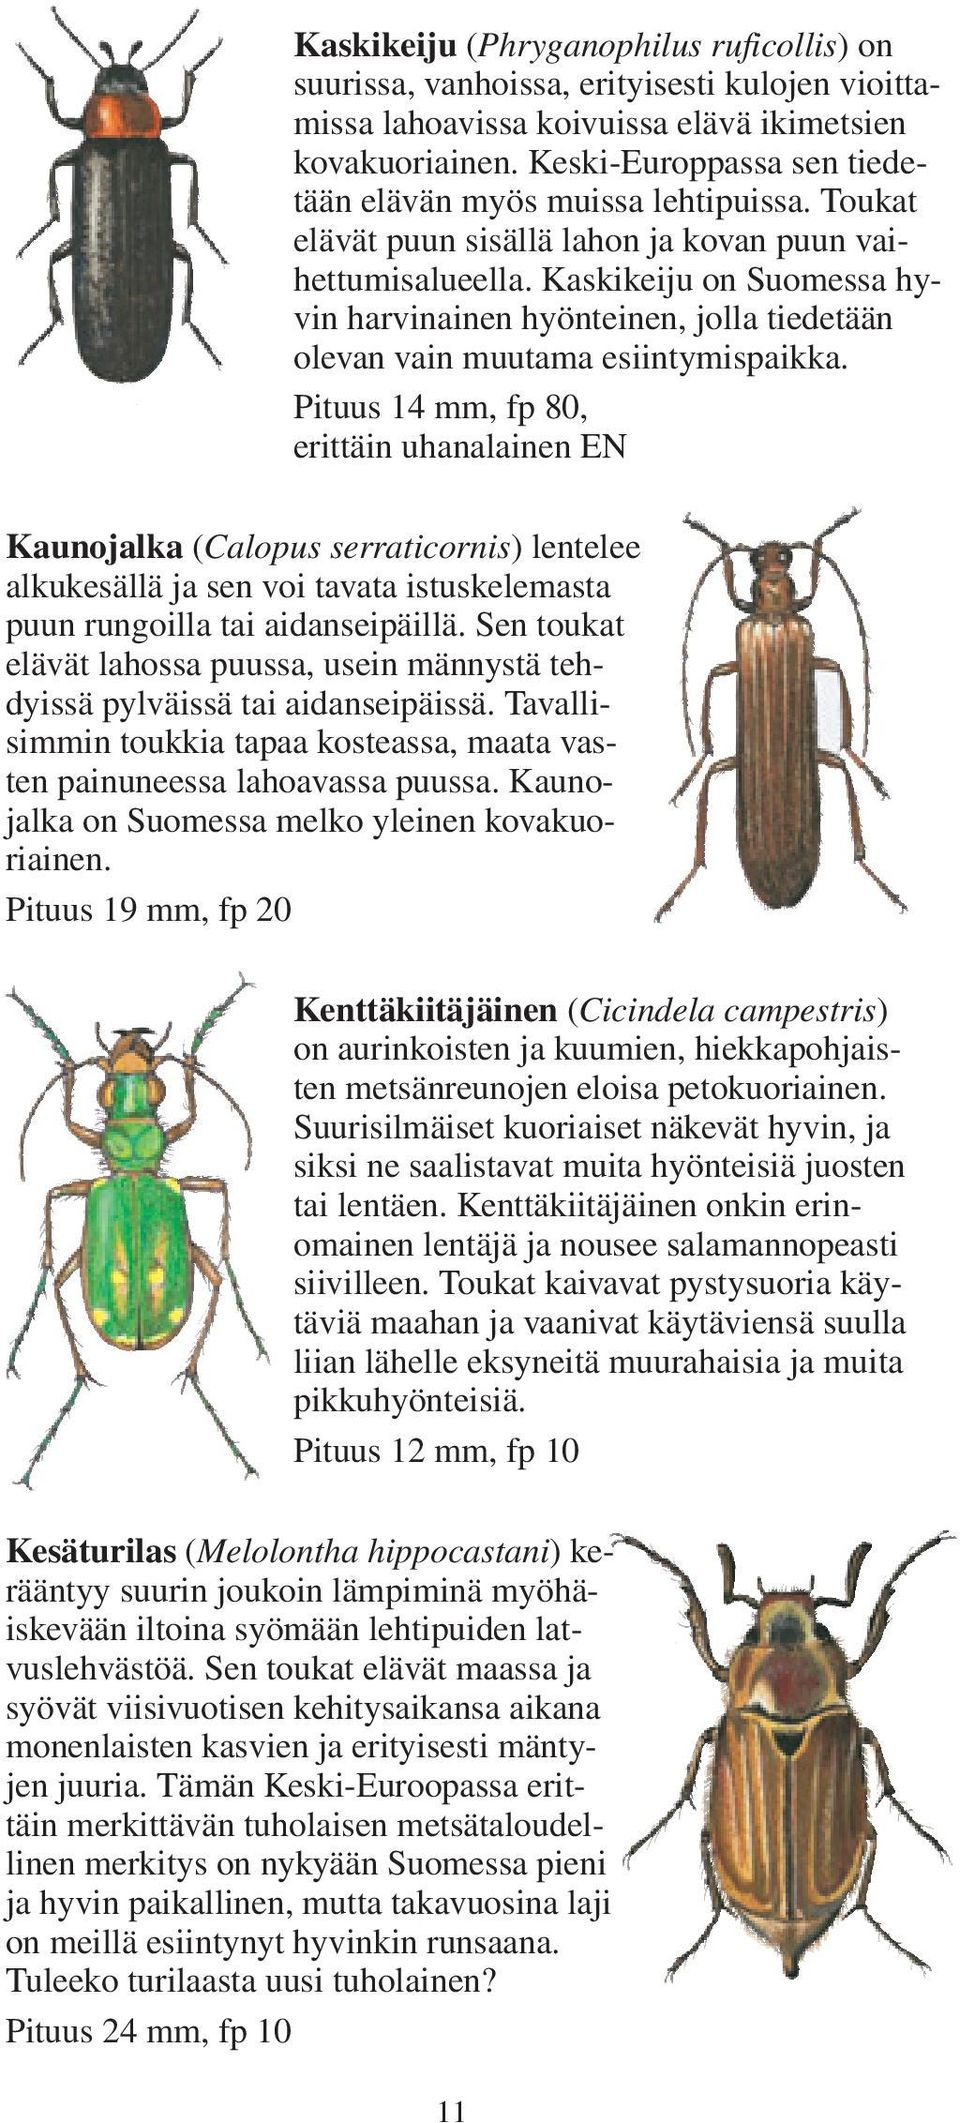 Kaskikeiju on Suomessa hyvin harvinainen hyönteinen, jolla tiedetään olevan vain muutama esiintymispaikka.